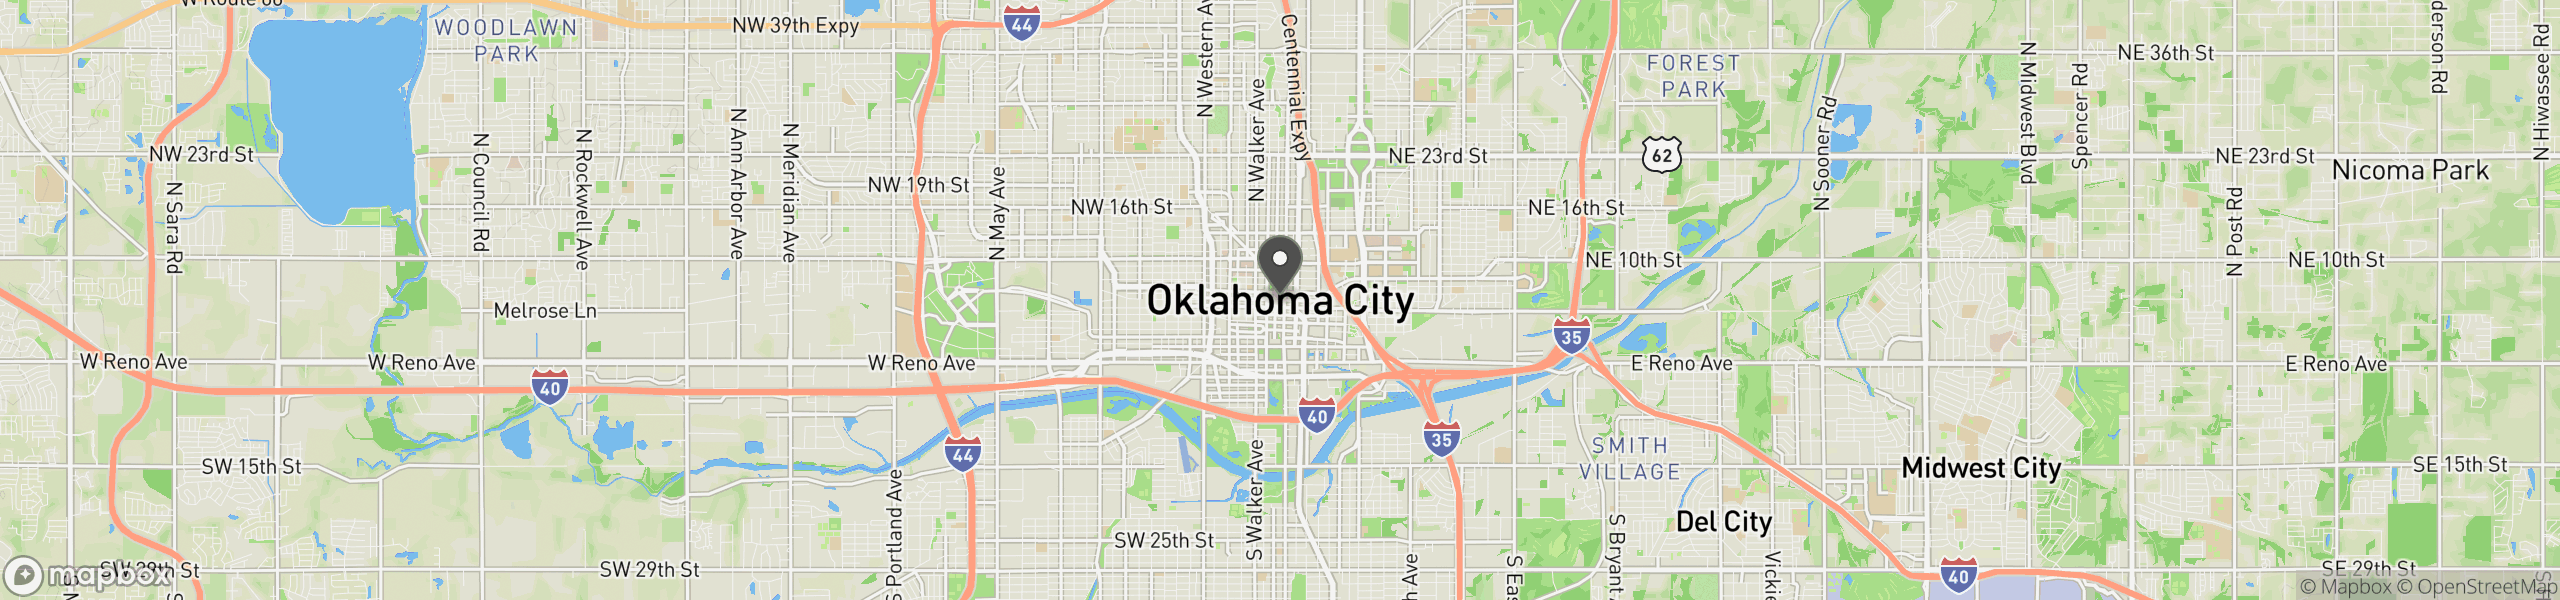 Oklahoma City, OK 73125